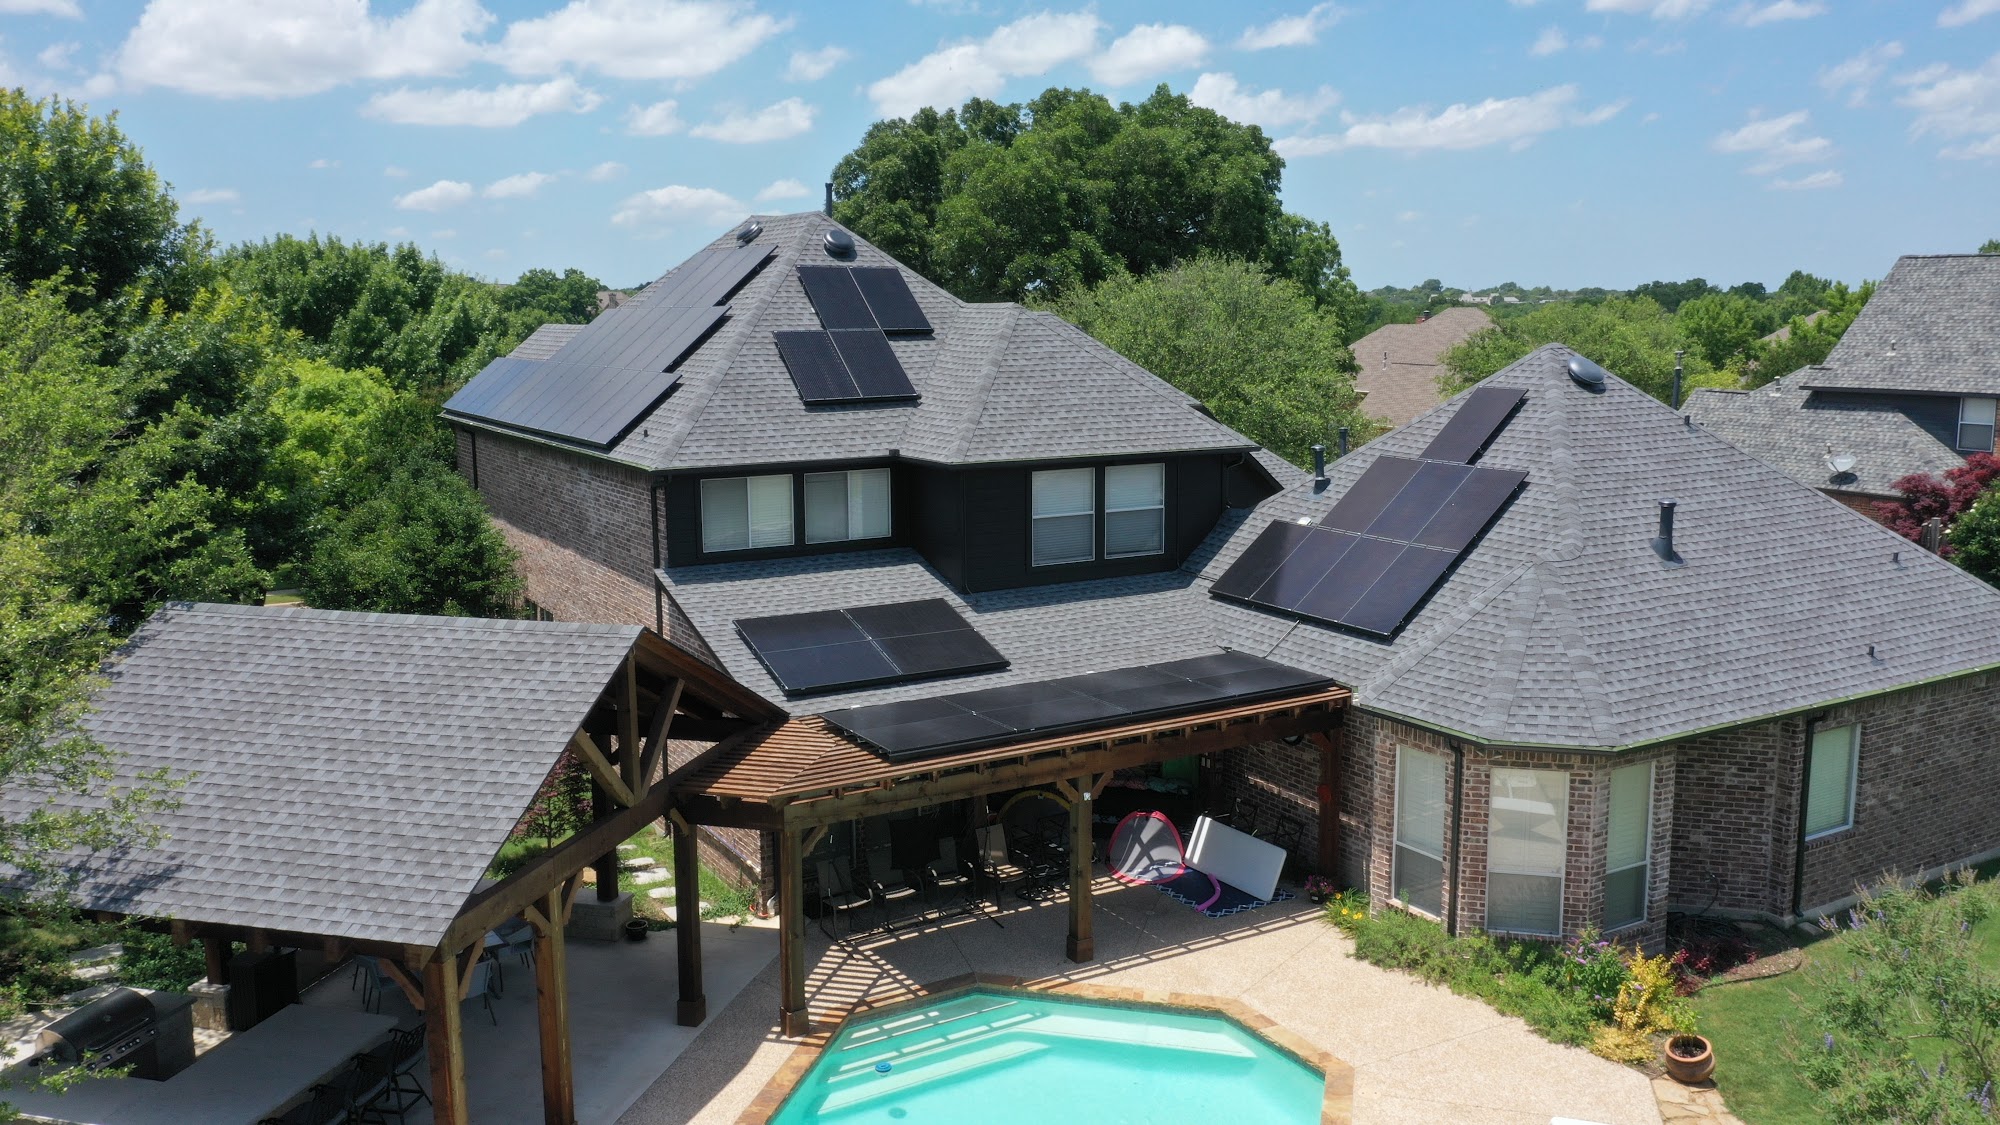 Sky Blue Energy - Solar Installers 2116 Auburndale Ave, Melissa Texas 75454